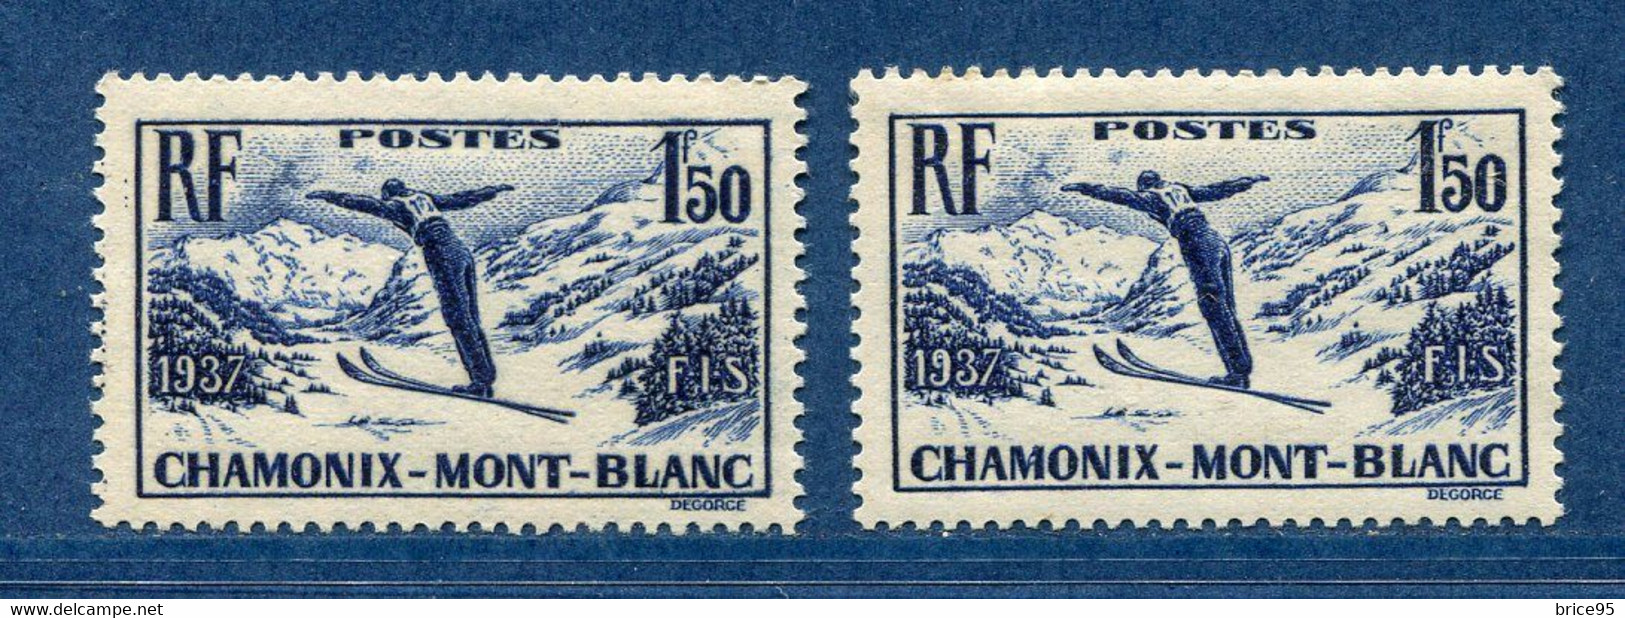 ⭐ France - Variété - YT N° 334 - Couleurs - Papier Jaunatre - Neuf Sans Charnière - 1937 ⭐ - Ongebruikt